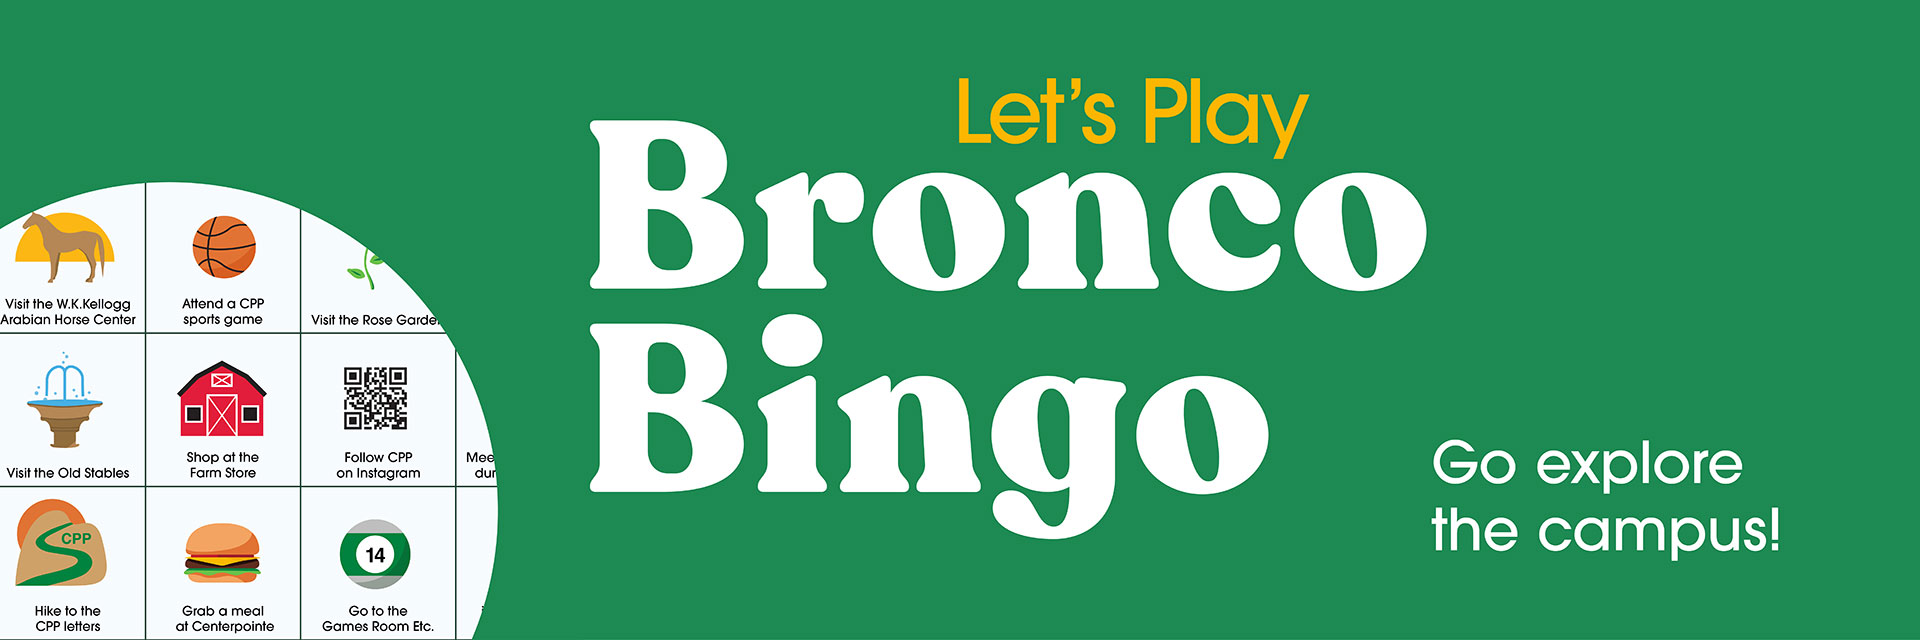 Let's Play Bronco Bingo. Go explore the campus!